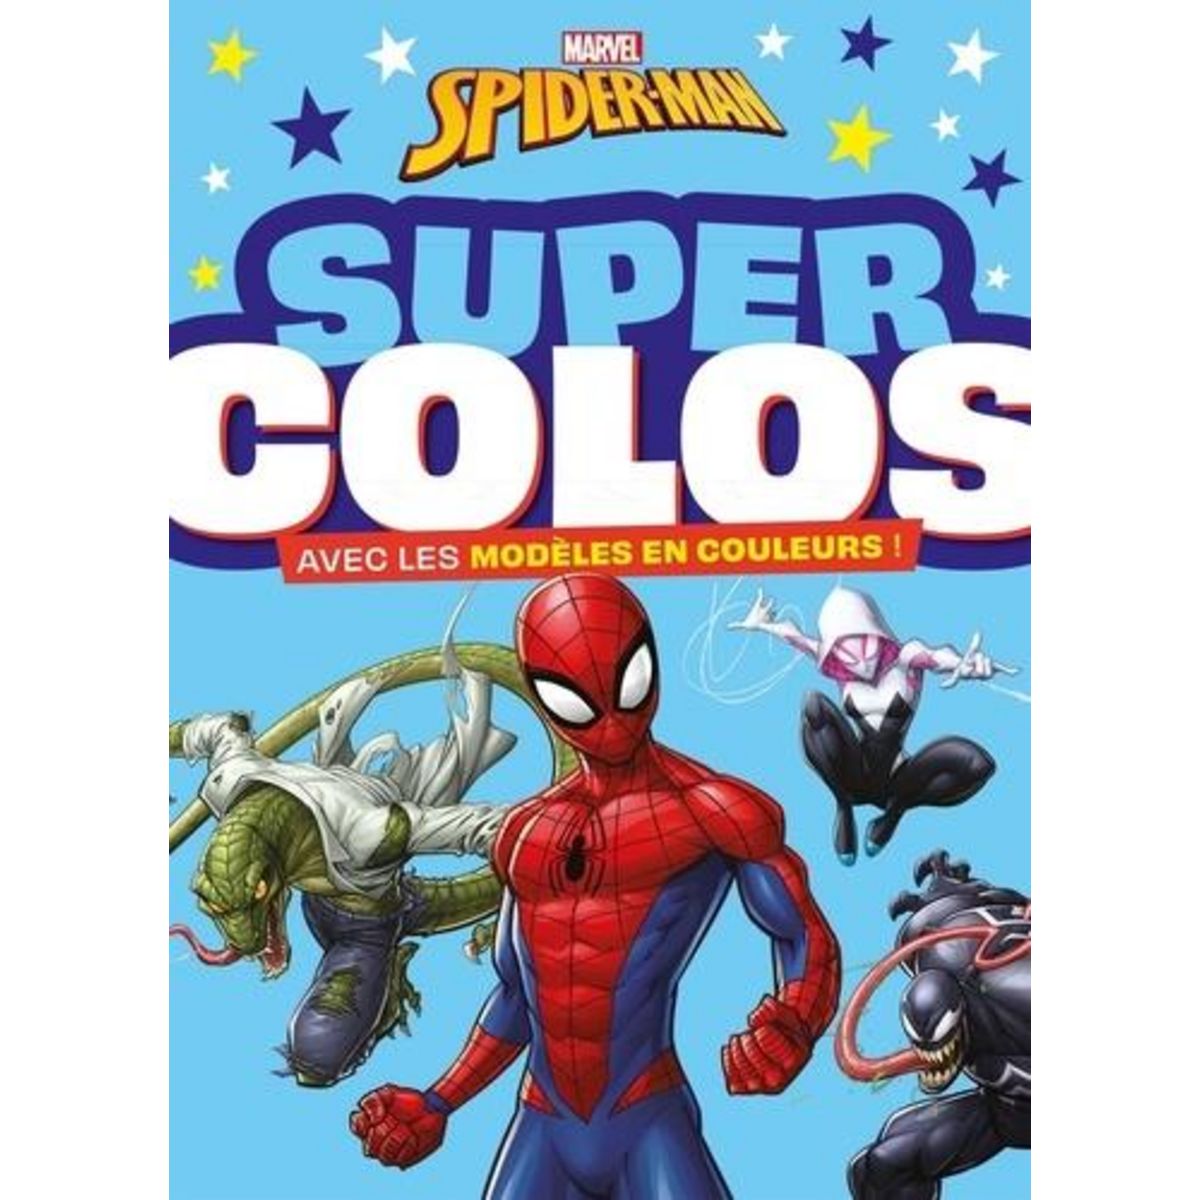  SUPER COLOS SPIDER-MAN. AVEC LES MODELES EN COULEURS !, Marvel